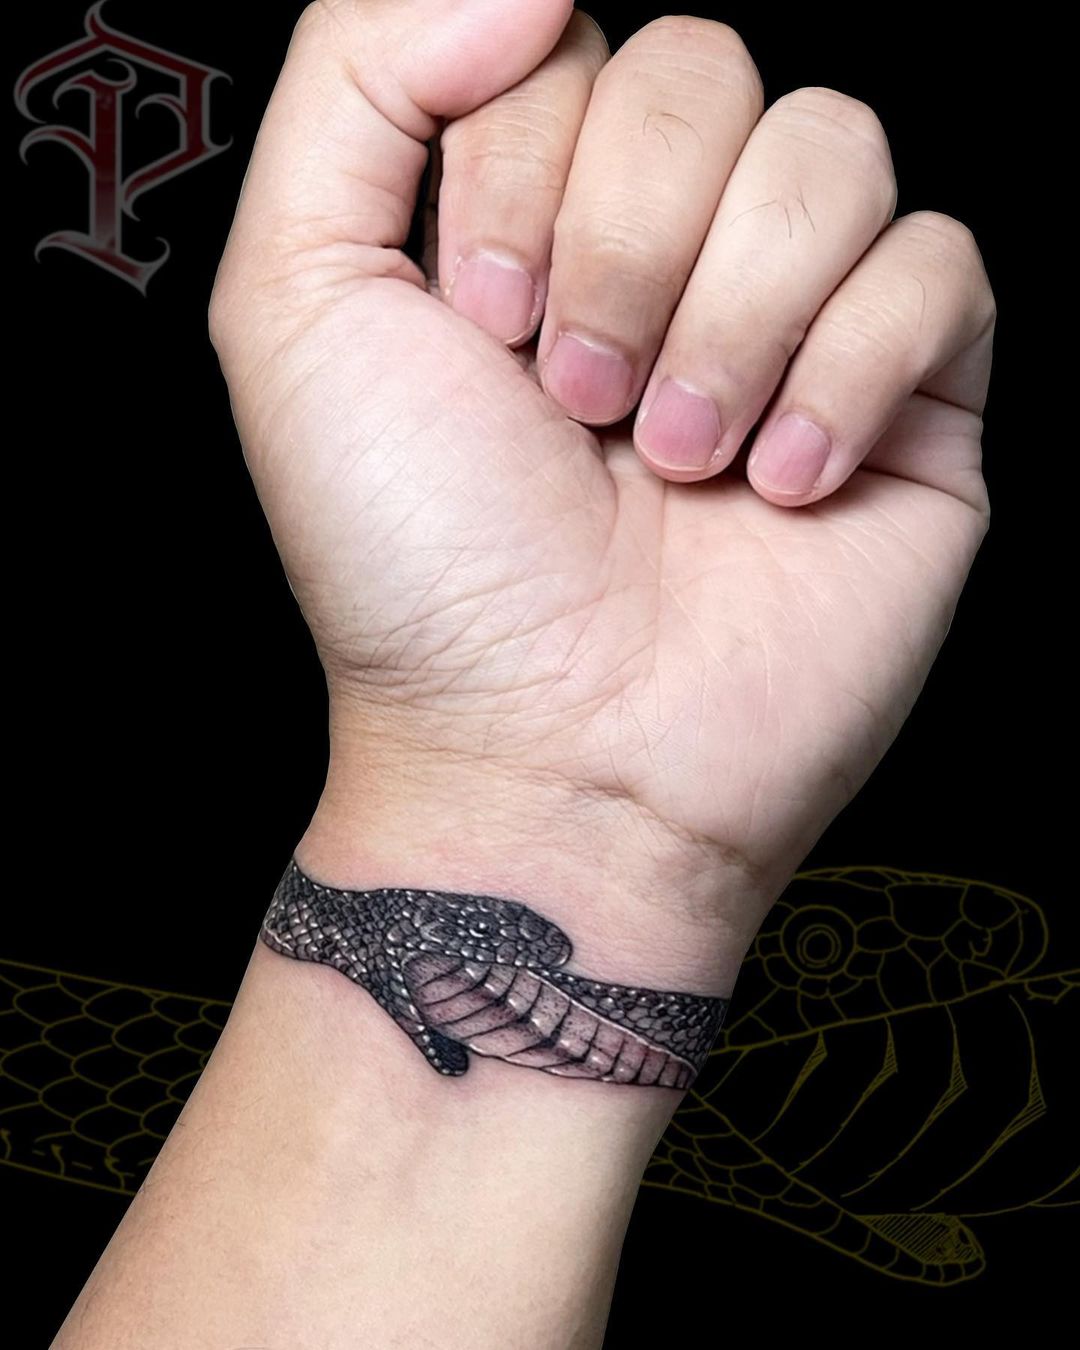 Tatuaje de Ouroboros en la muñeca con tinta negra.